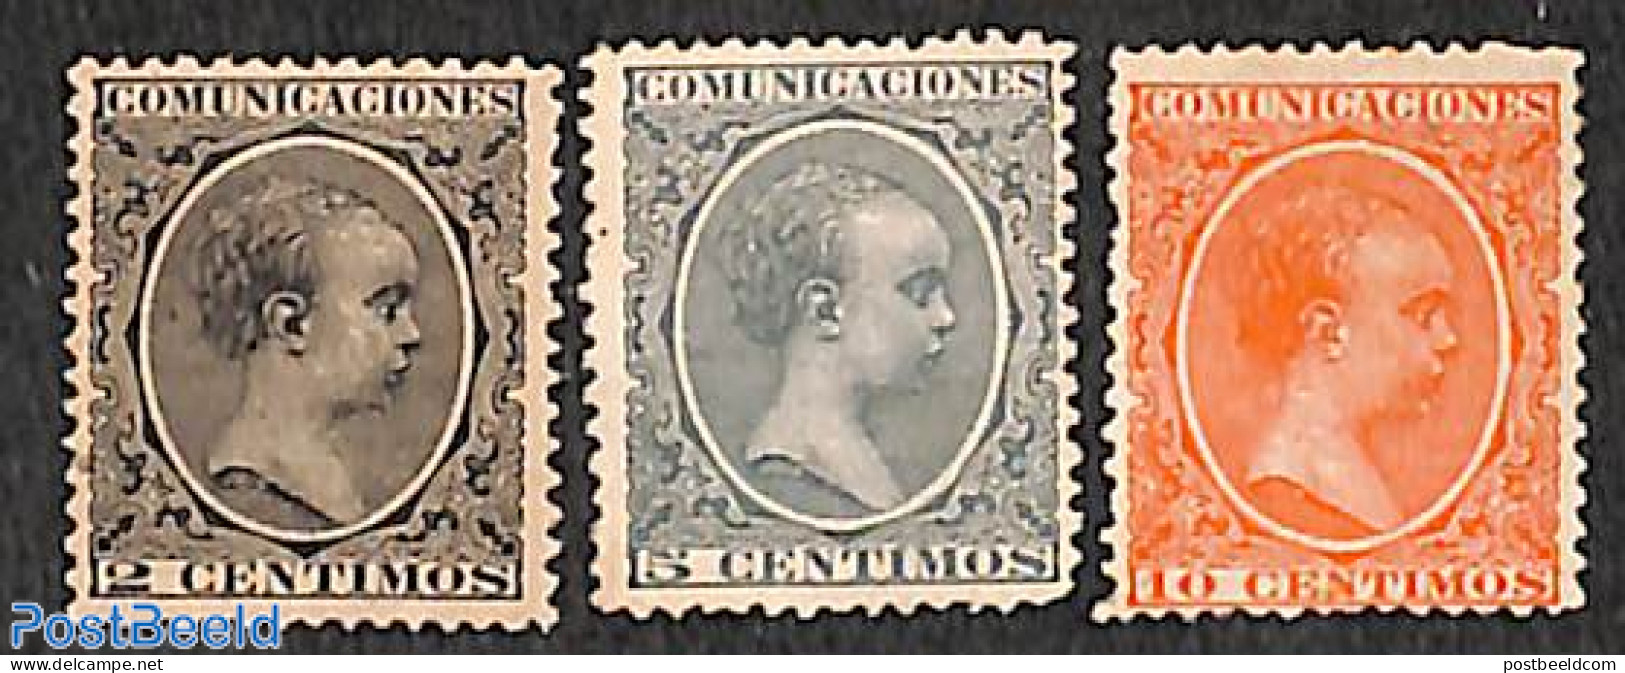 Spain 1899 King Alphonse XIII 3v, Unused (hinged) - Neufs